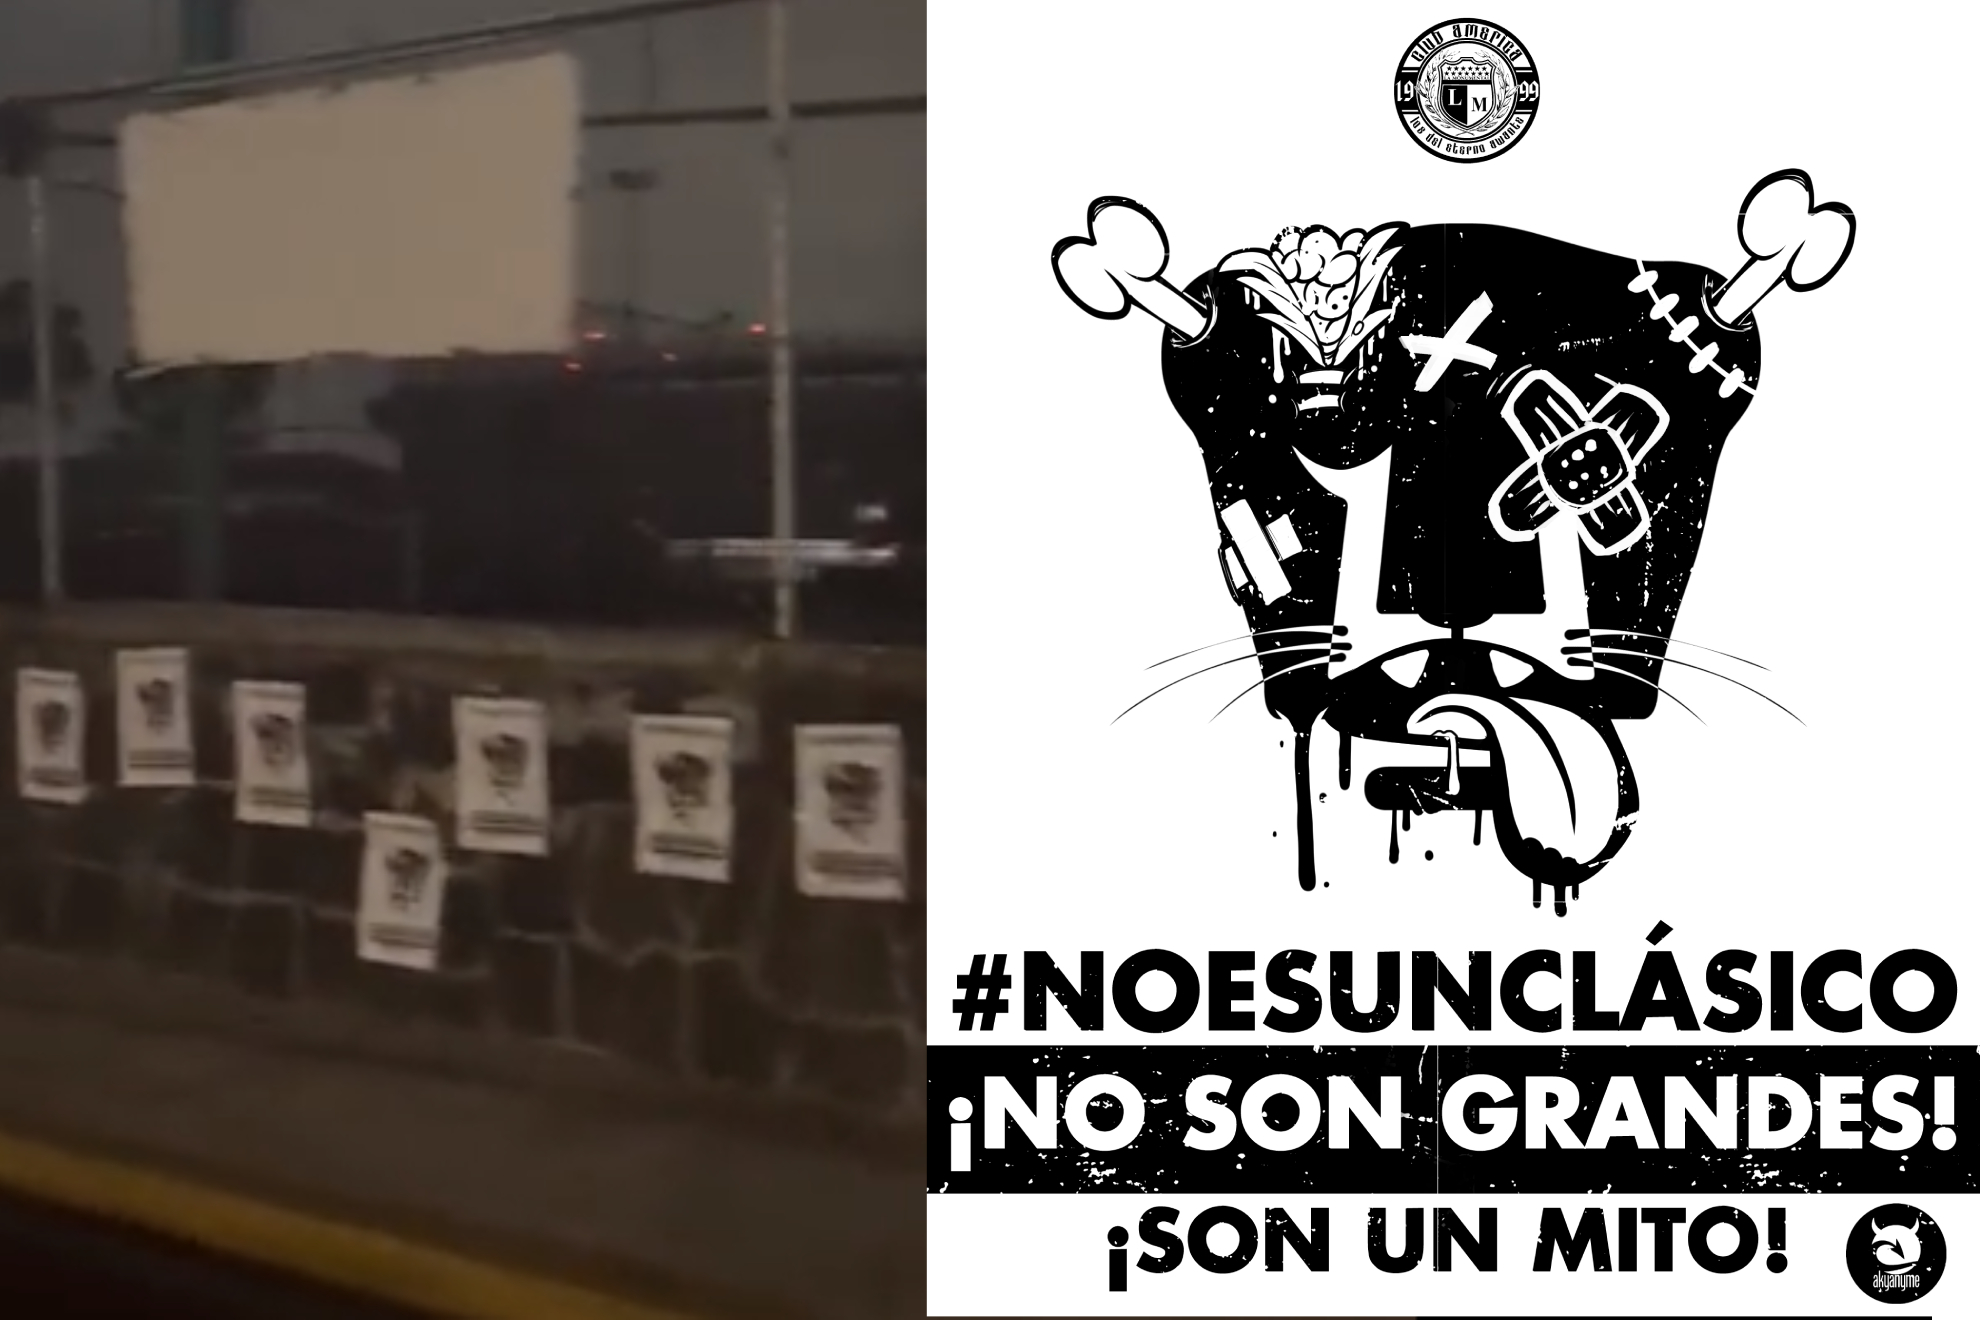 Previo al América vs Pumas, amanecen bardas del Azteca con carteles dedicados a los felinos: "No es un clásico"